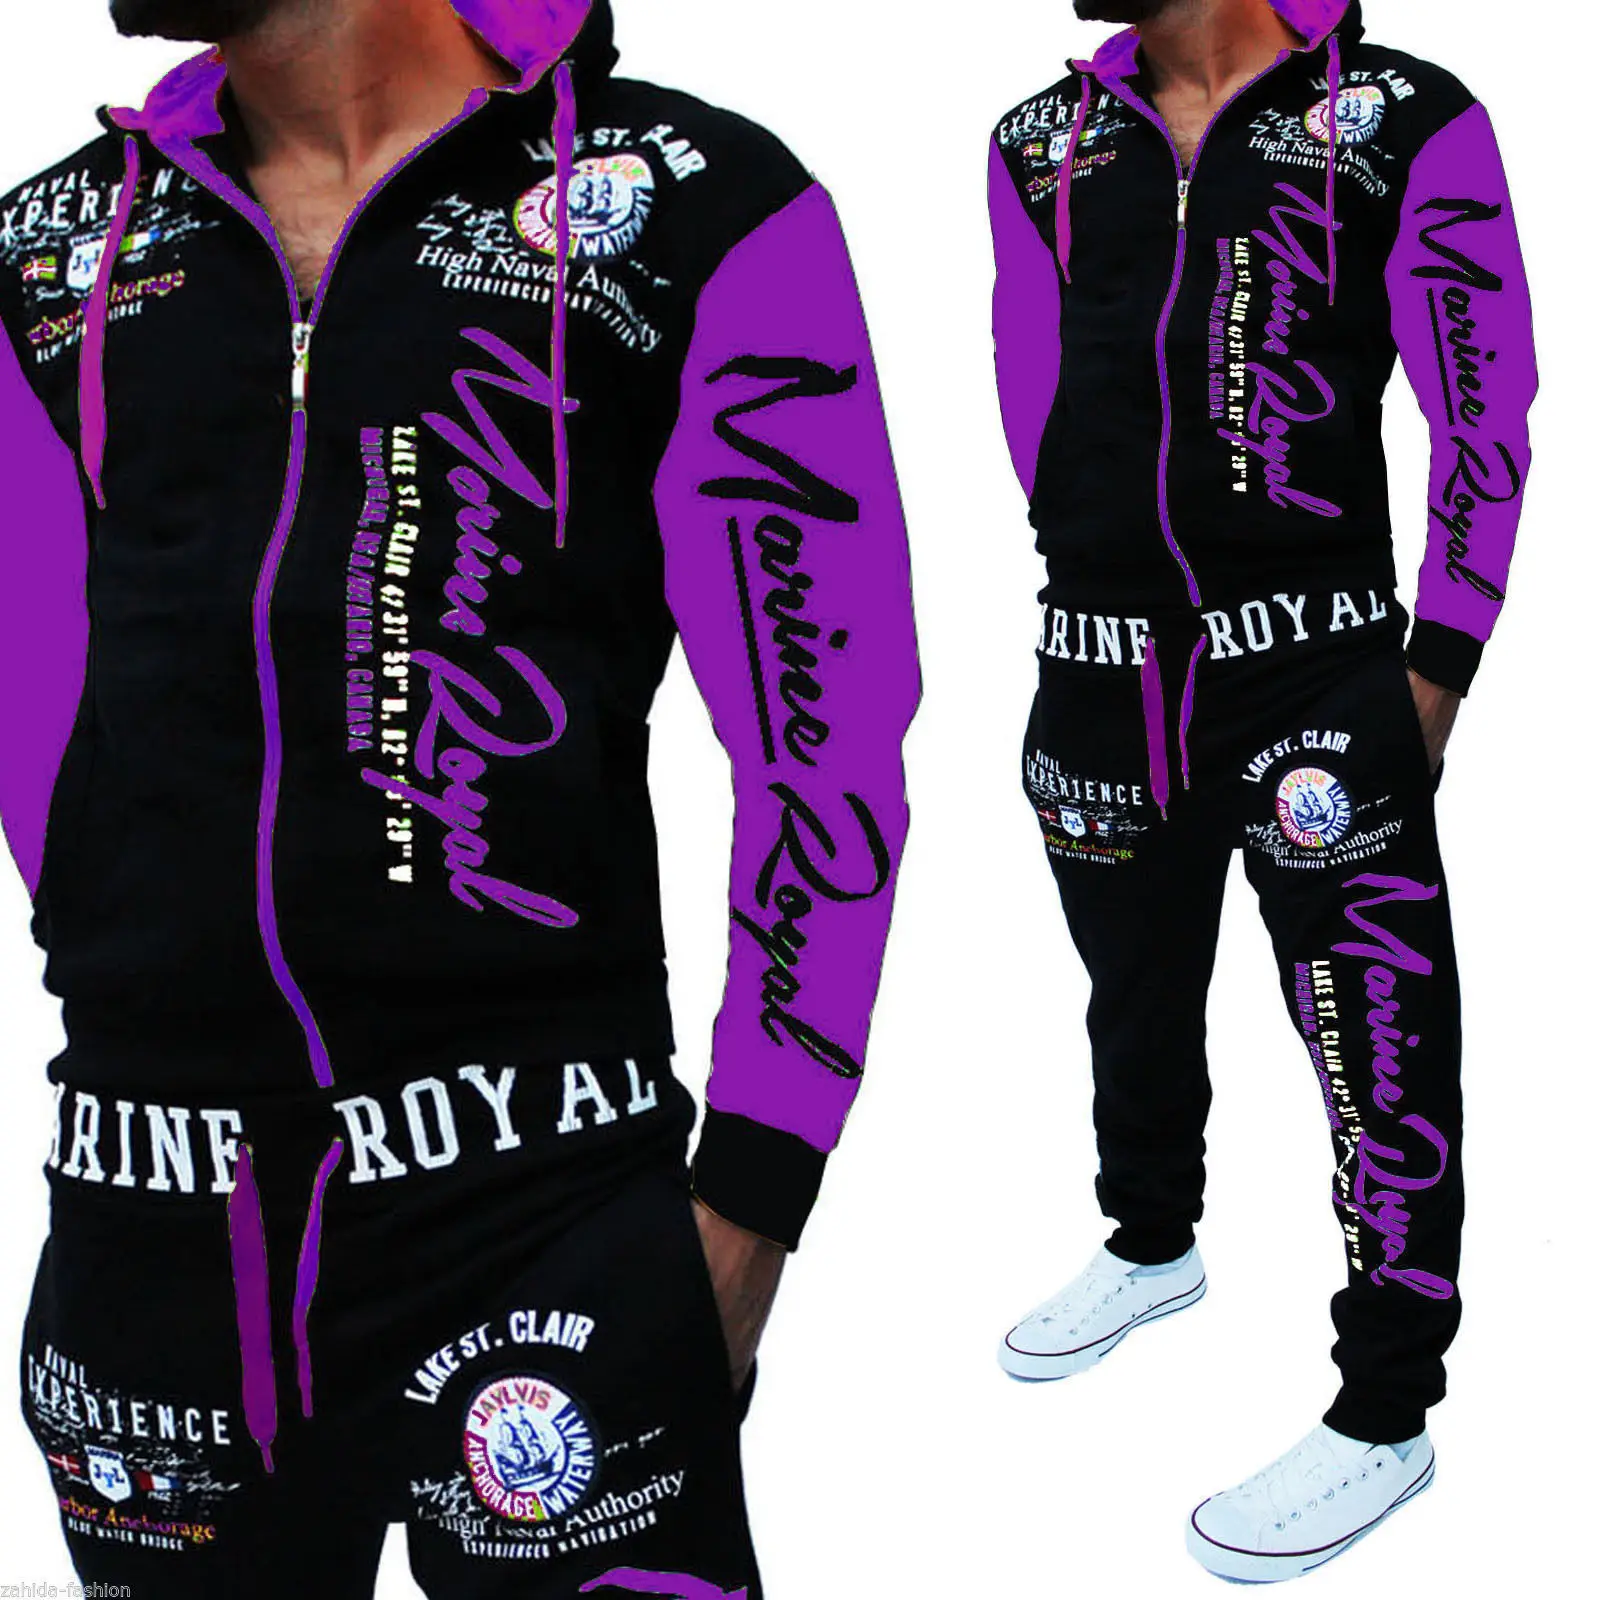 

High Quality Men Oversized Hood Sweatsuit men jogging suits Set color block hoodies men sweatsuit 2021, Picture shows